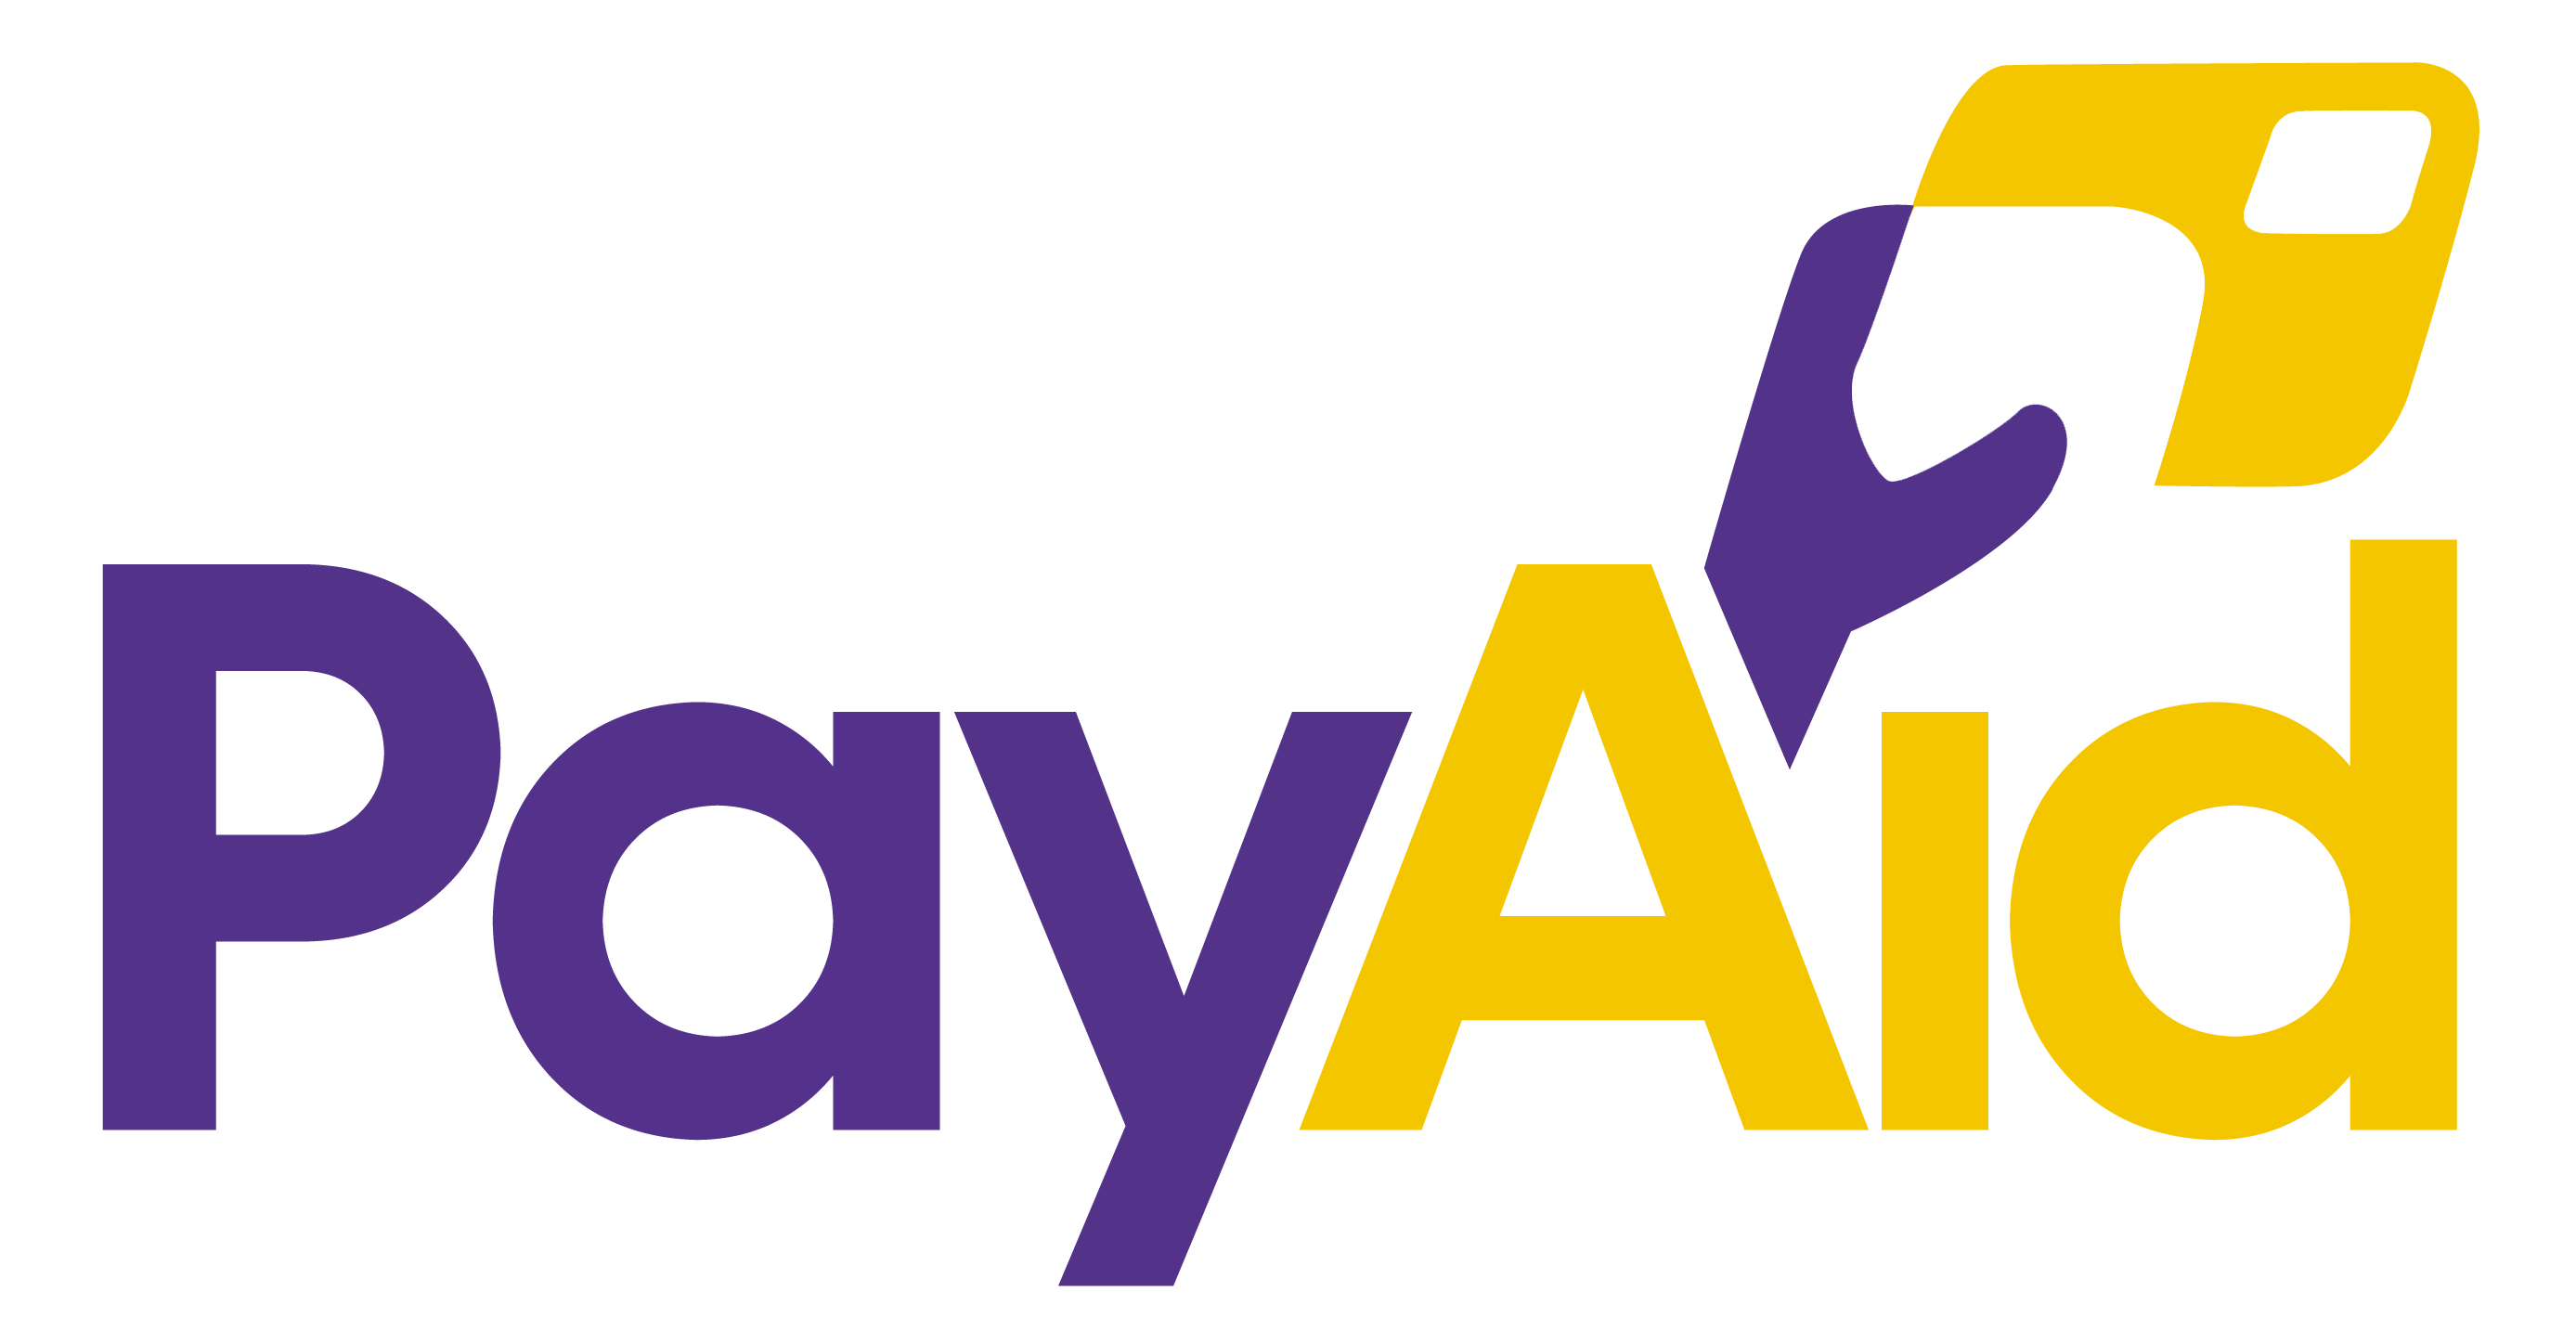 PayAid Payments